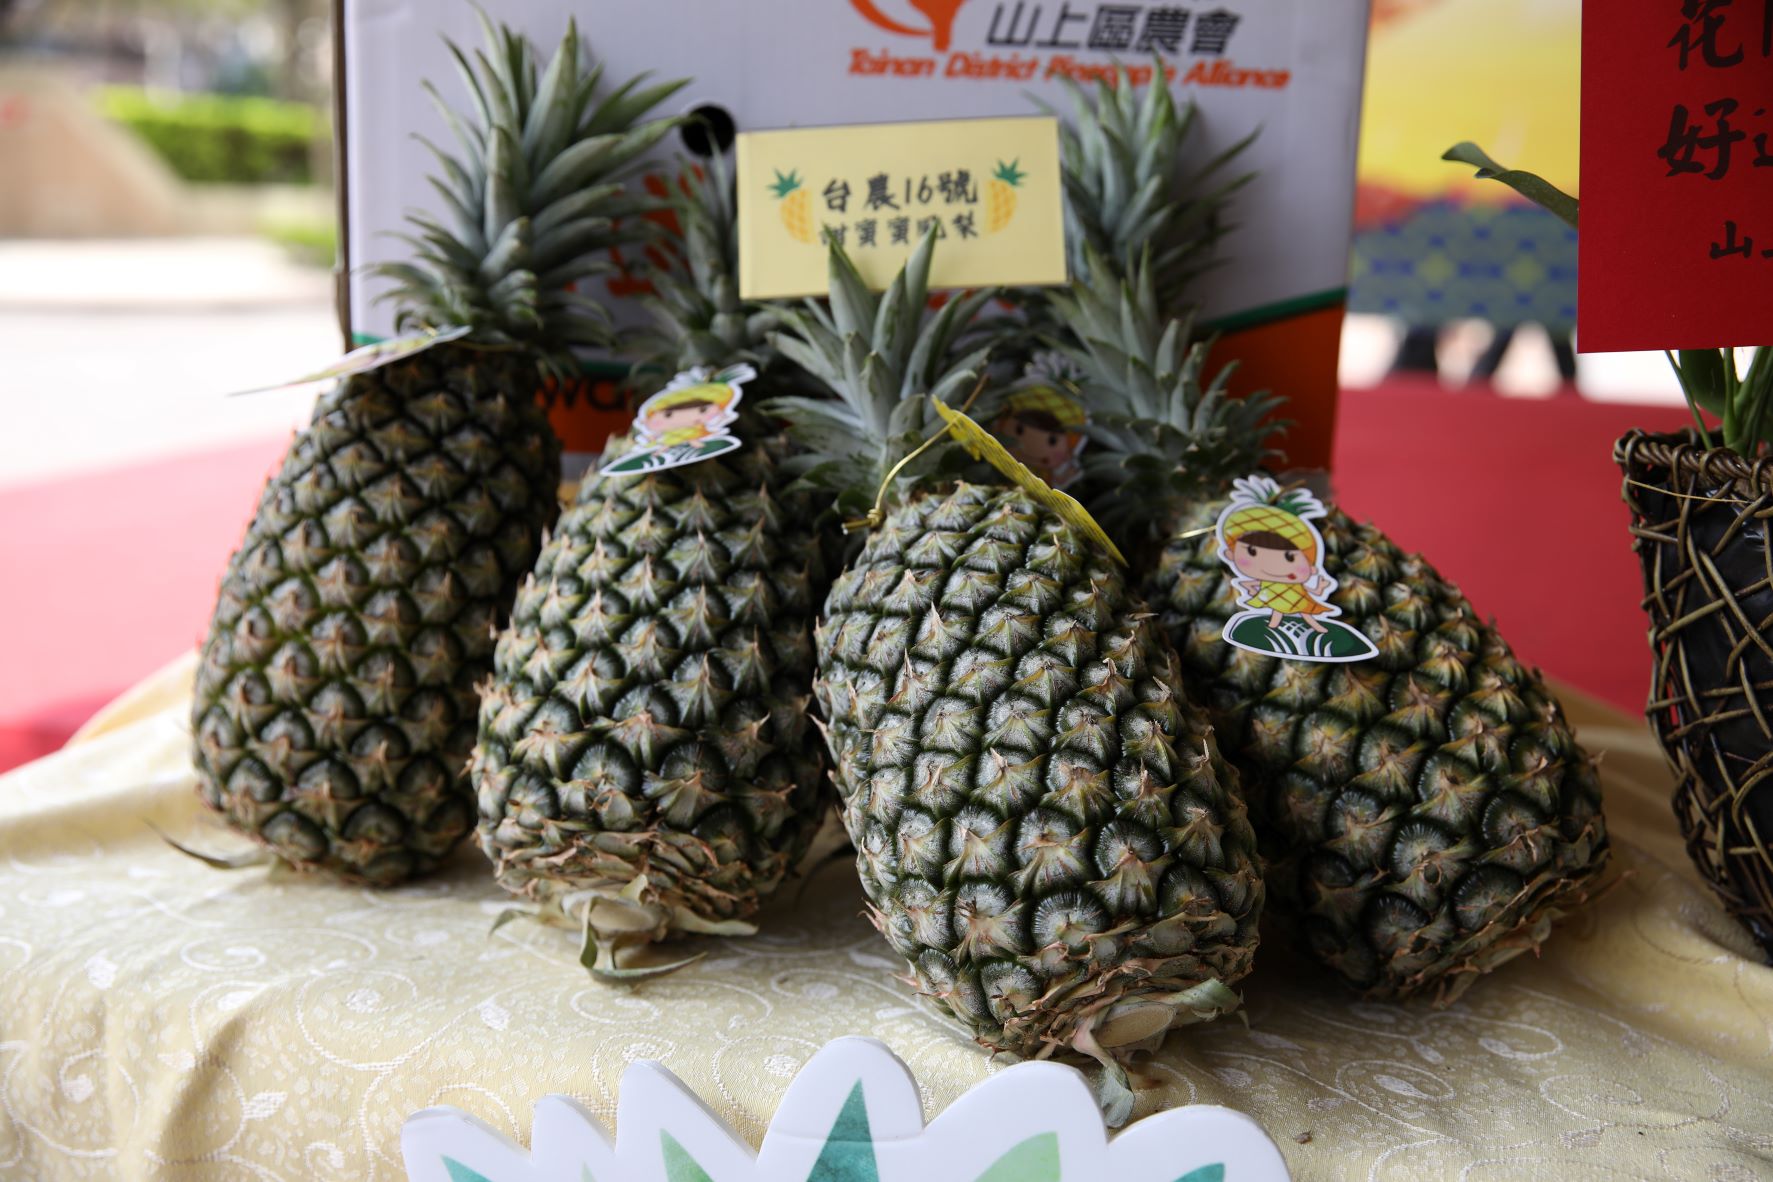 臺南市政府及山上區農會特別於產季期間為新北市民帶來最新鮮的臺農16號甜蜜蜜鳳梨及臺農17號金鑽鳳梨